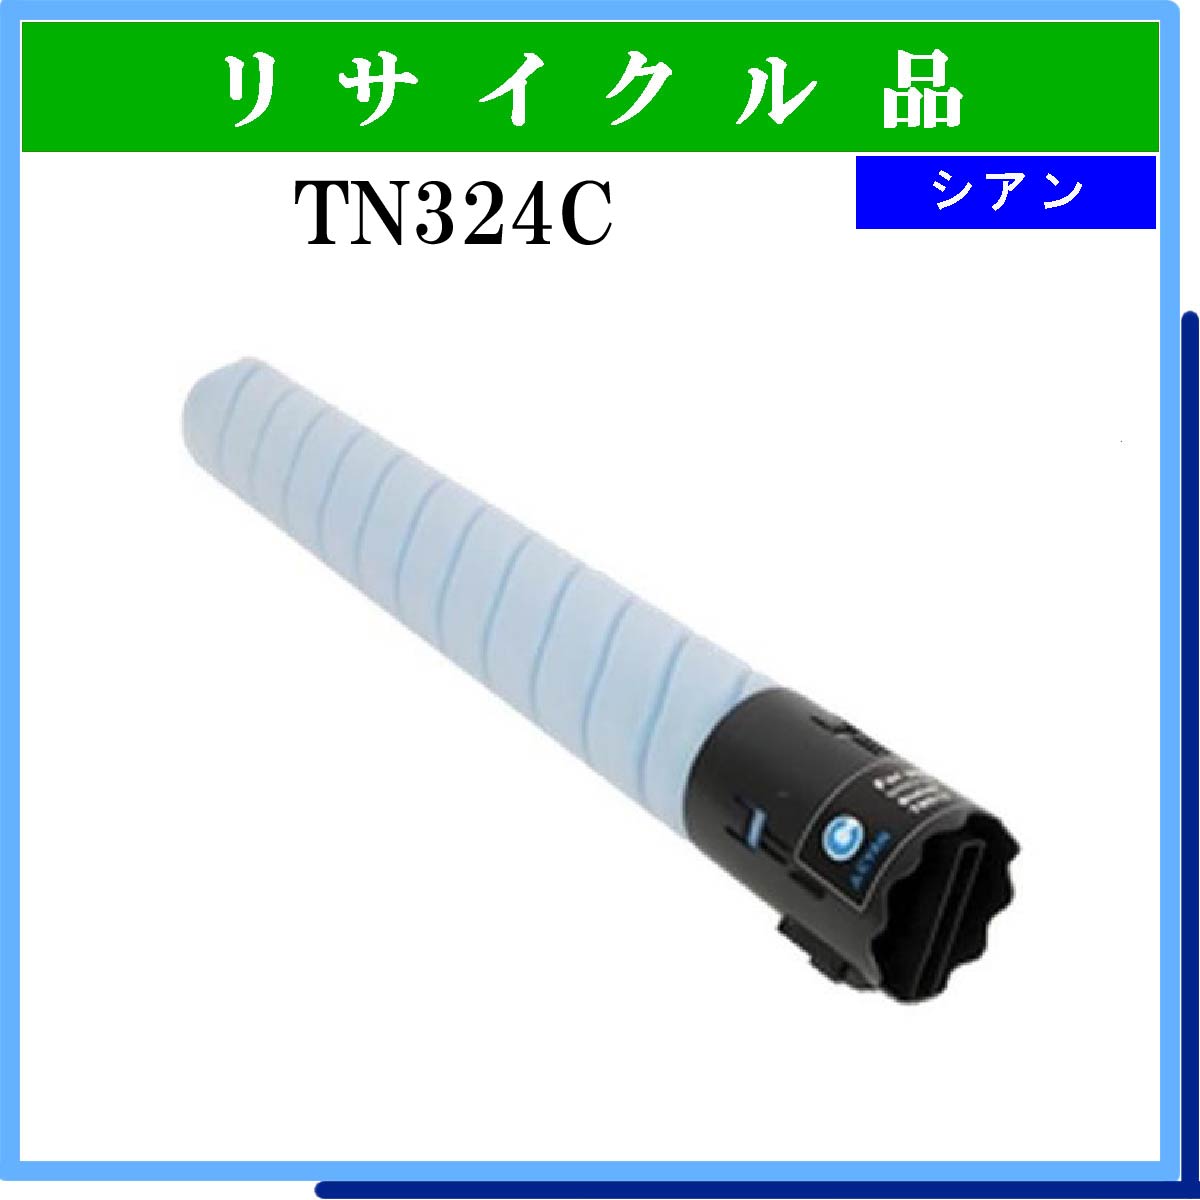 TN324C